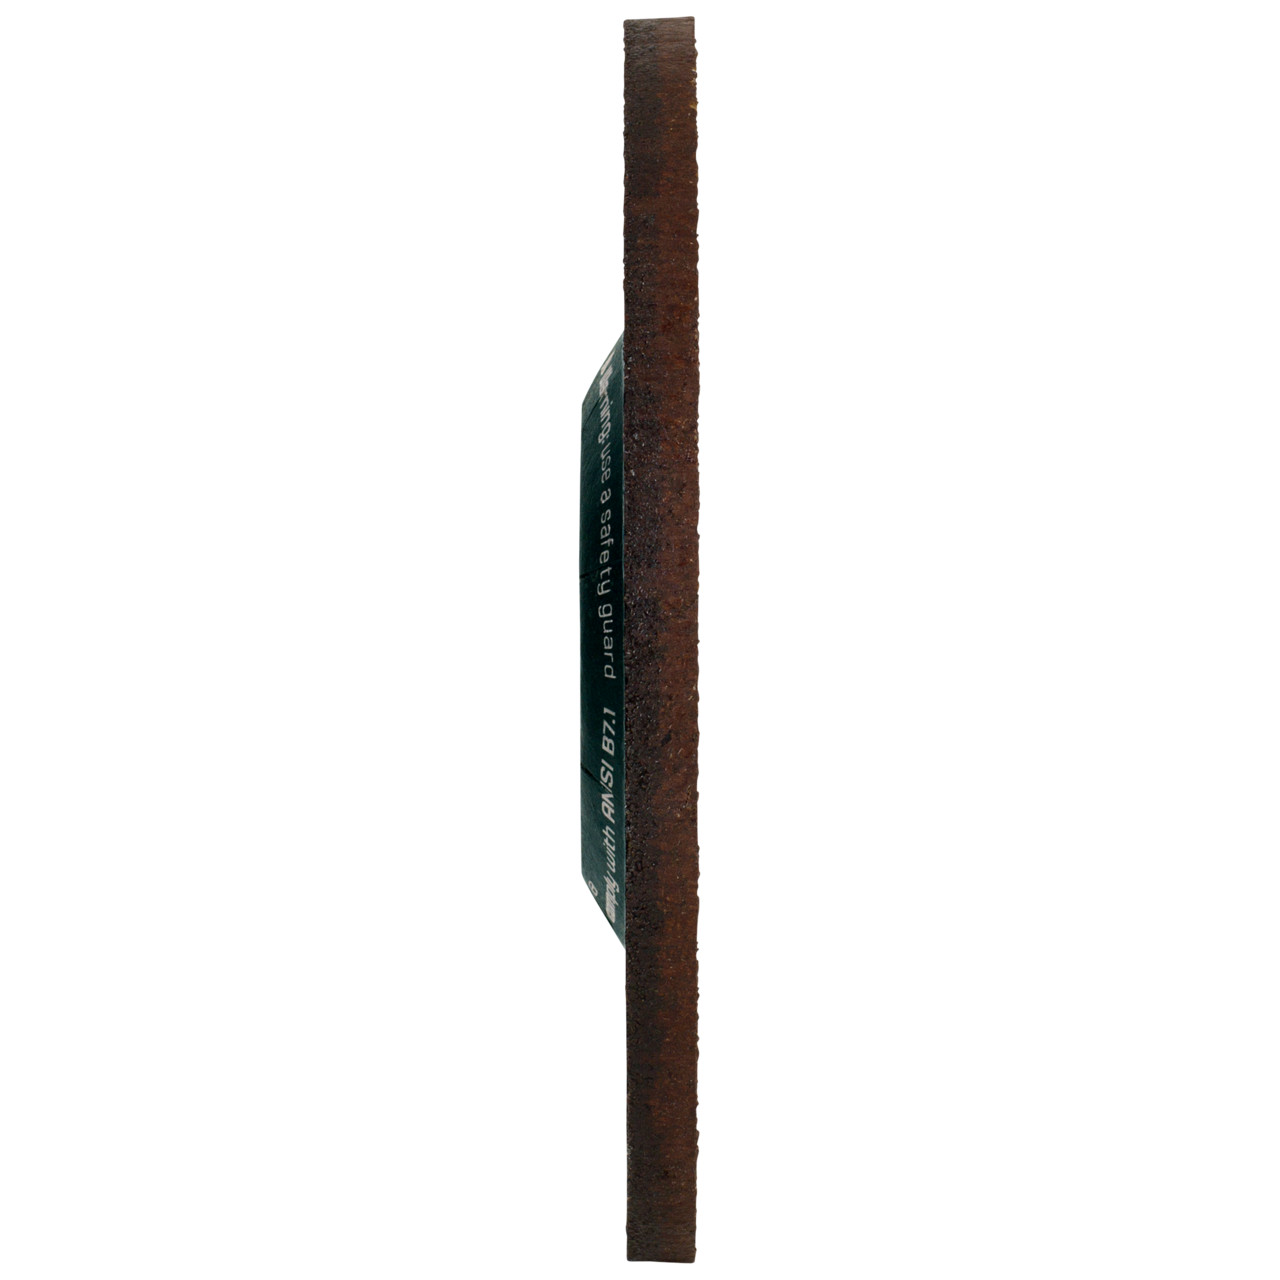 Tyrolit Voorslijpschijf DxUxH 125x7x22,23 CERABOND X voor staal en roestvast staal